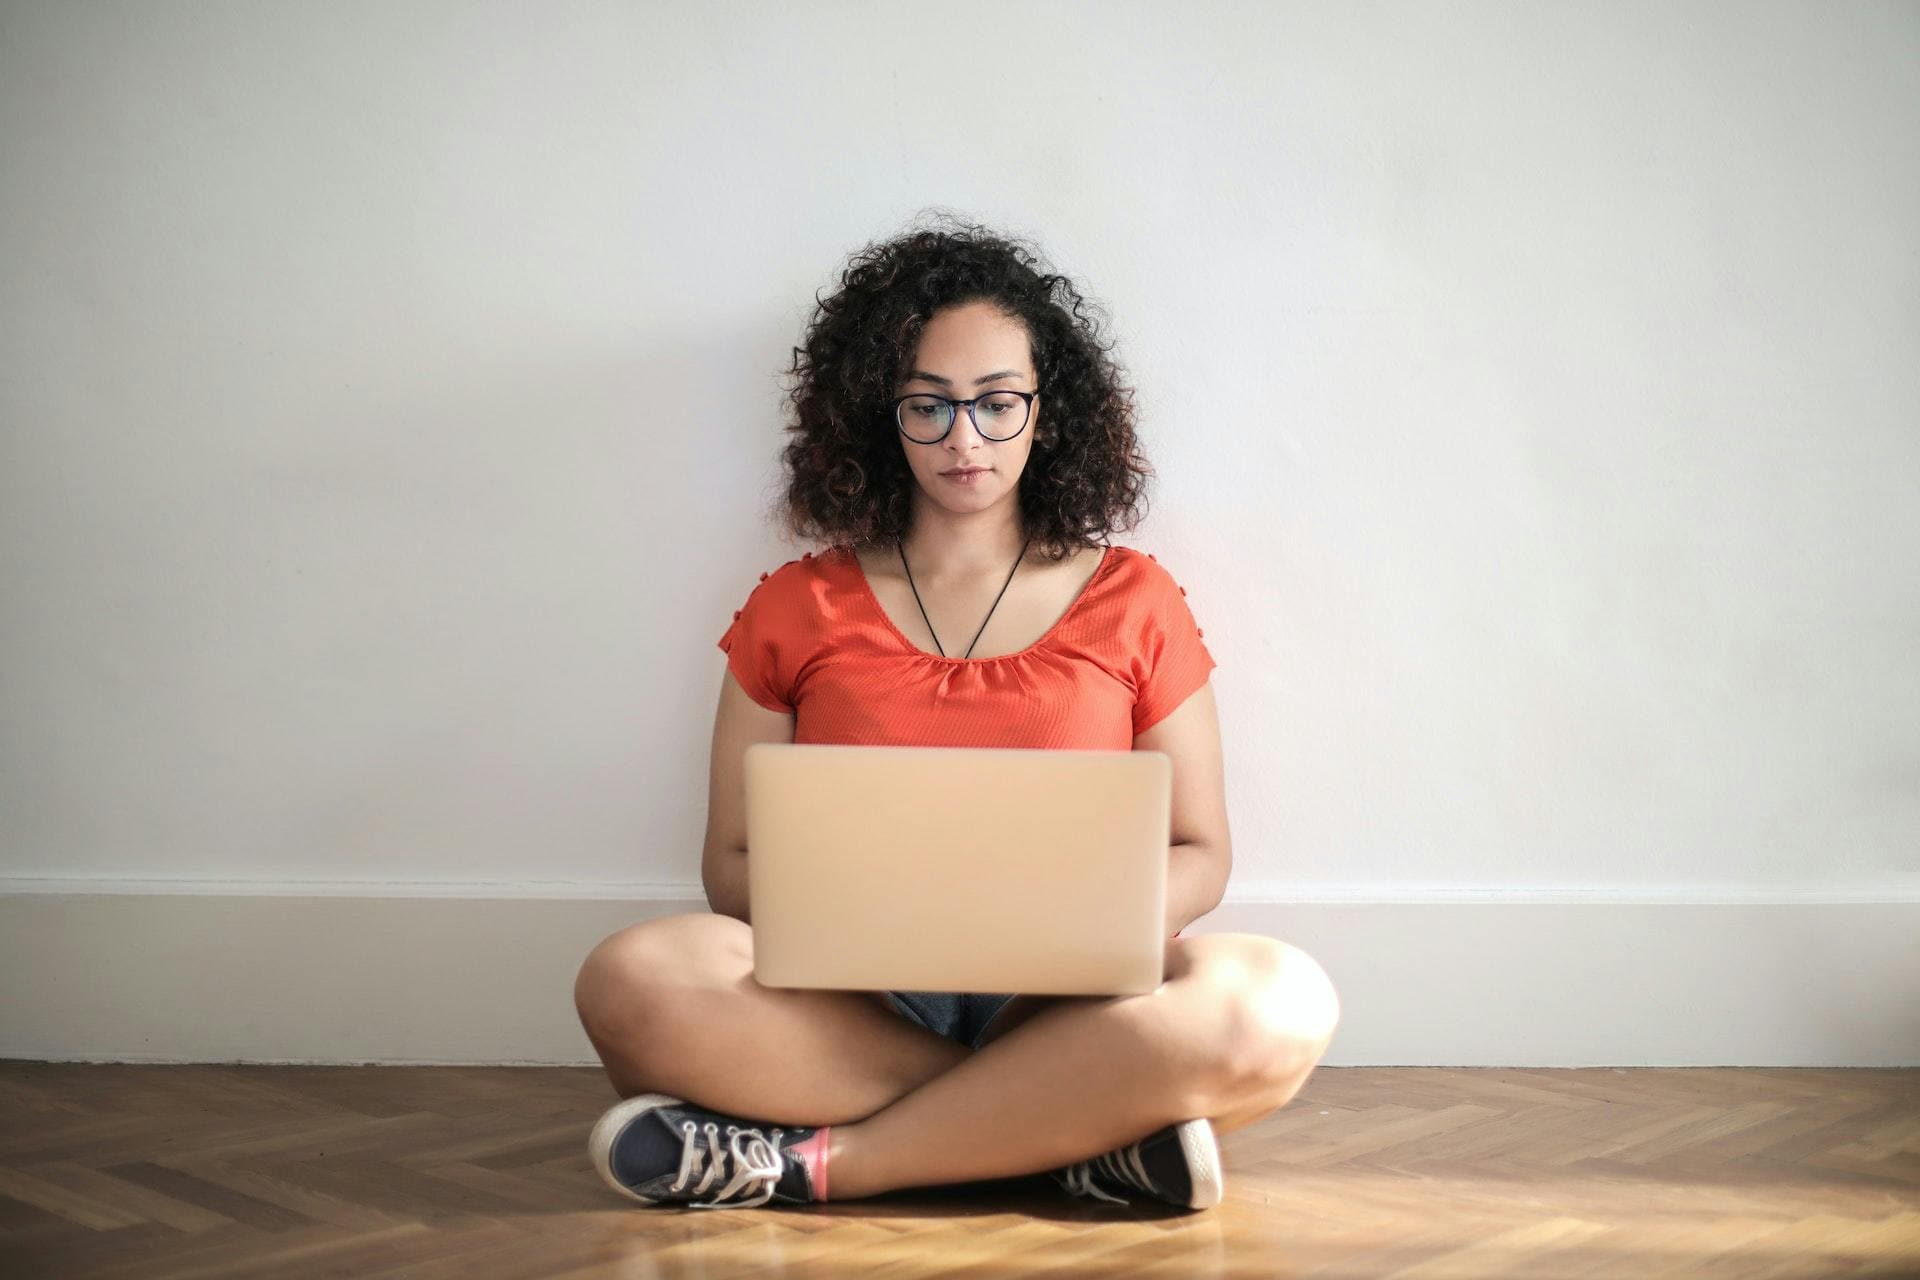 Freelancer on laptop sitting cross-legged on floor